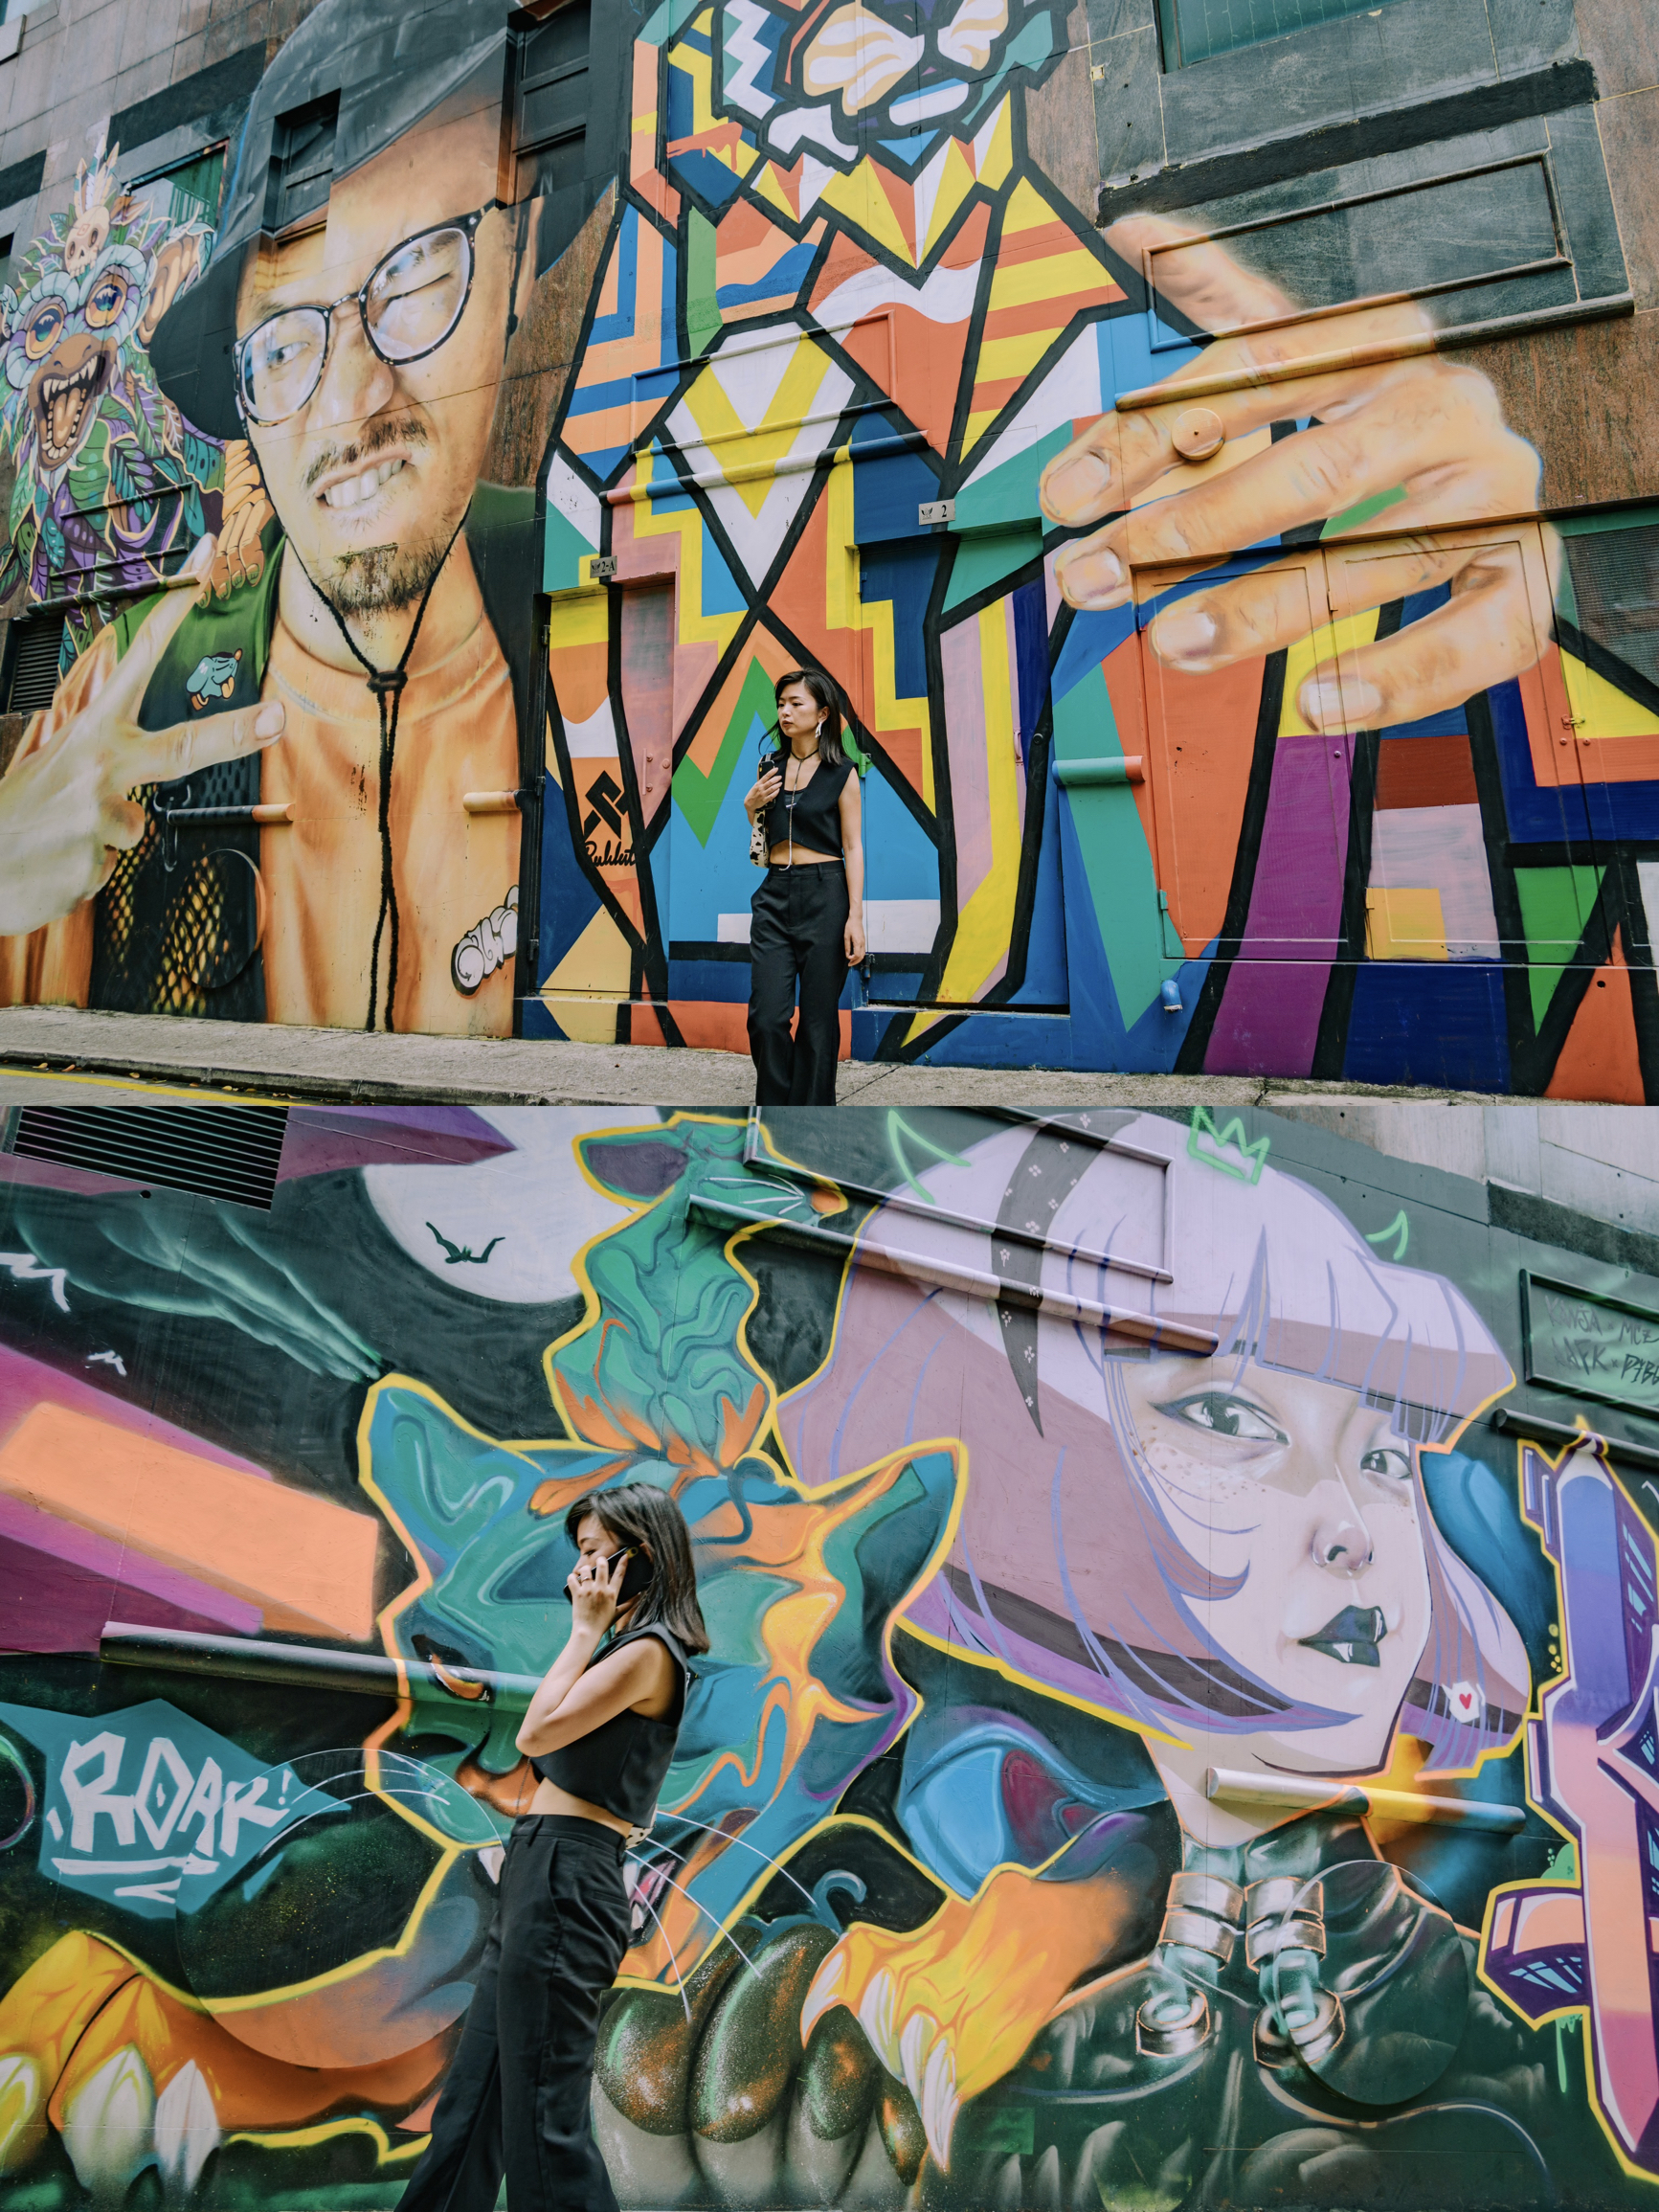 澳门小众游，打卡超酷的涂鸦艺术街区🌈